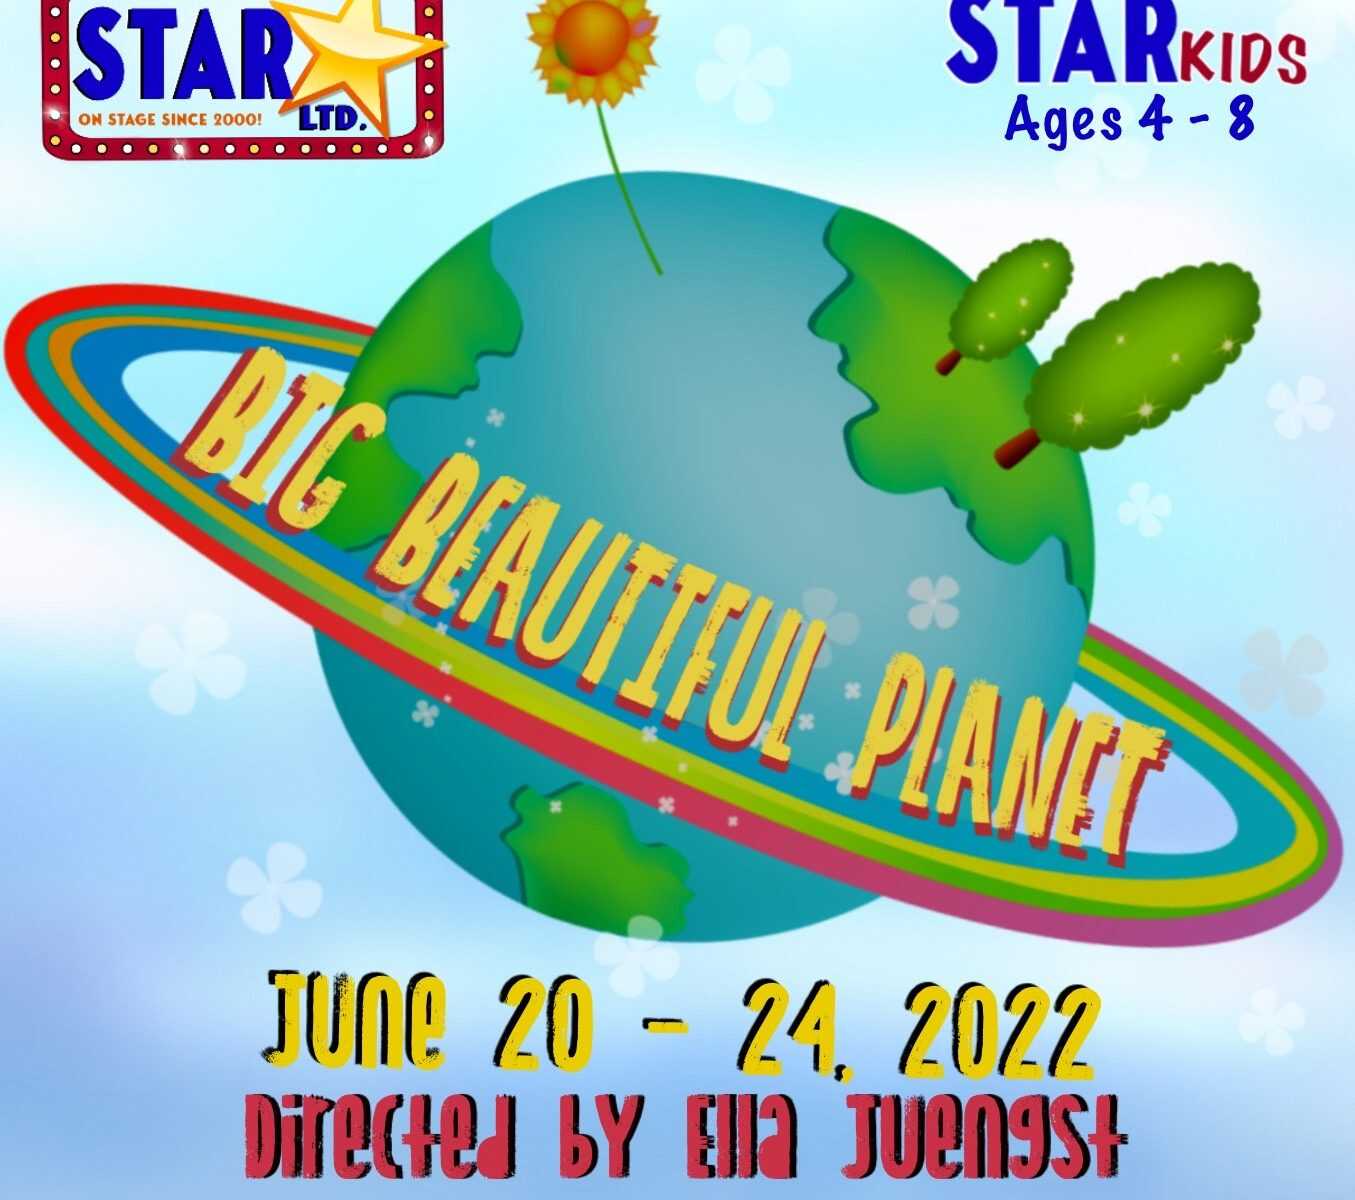 STAR Jids Big Beautiful Planet